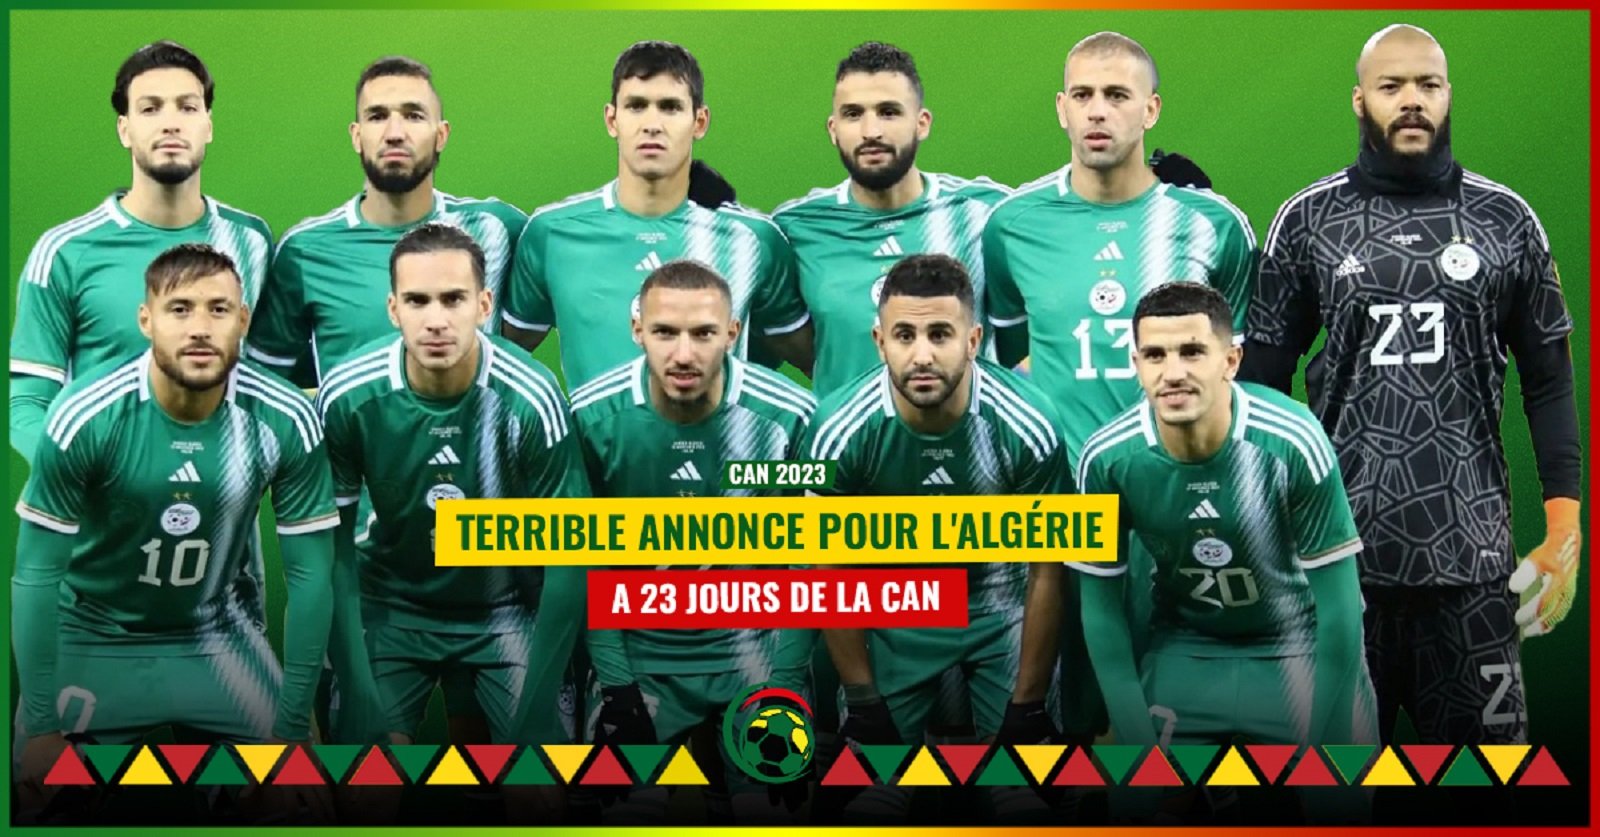 La Fédération Algérienne annonce une mauvaise nouvelle, à 23 jours de la CAN 2023